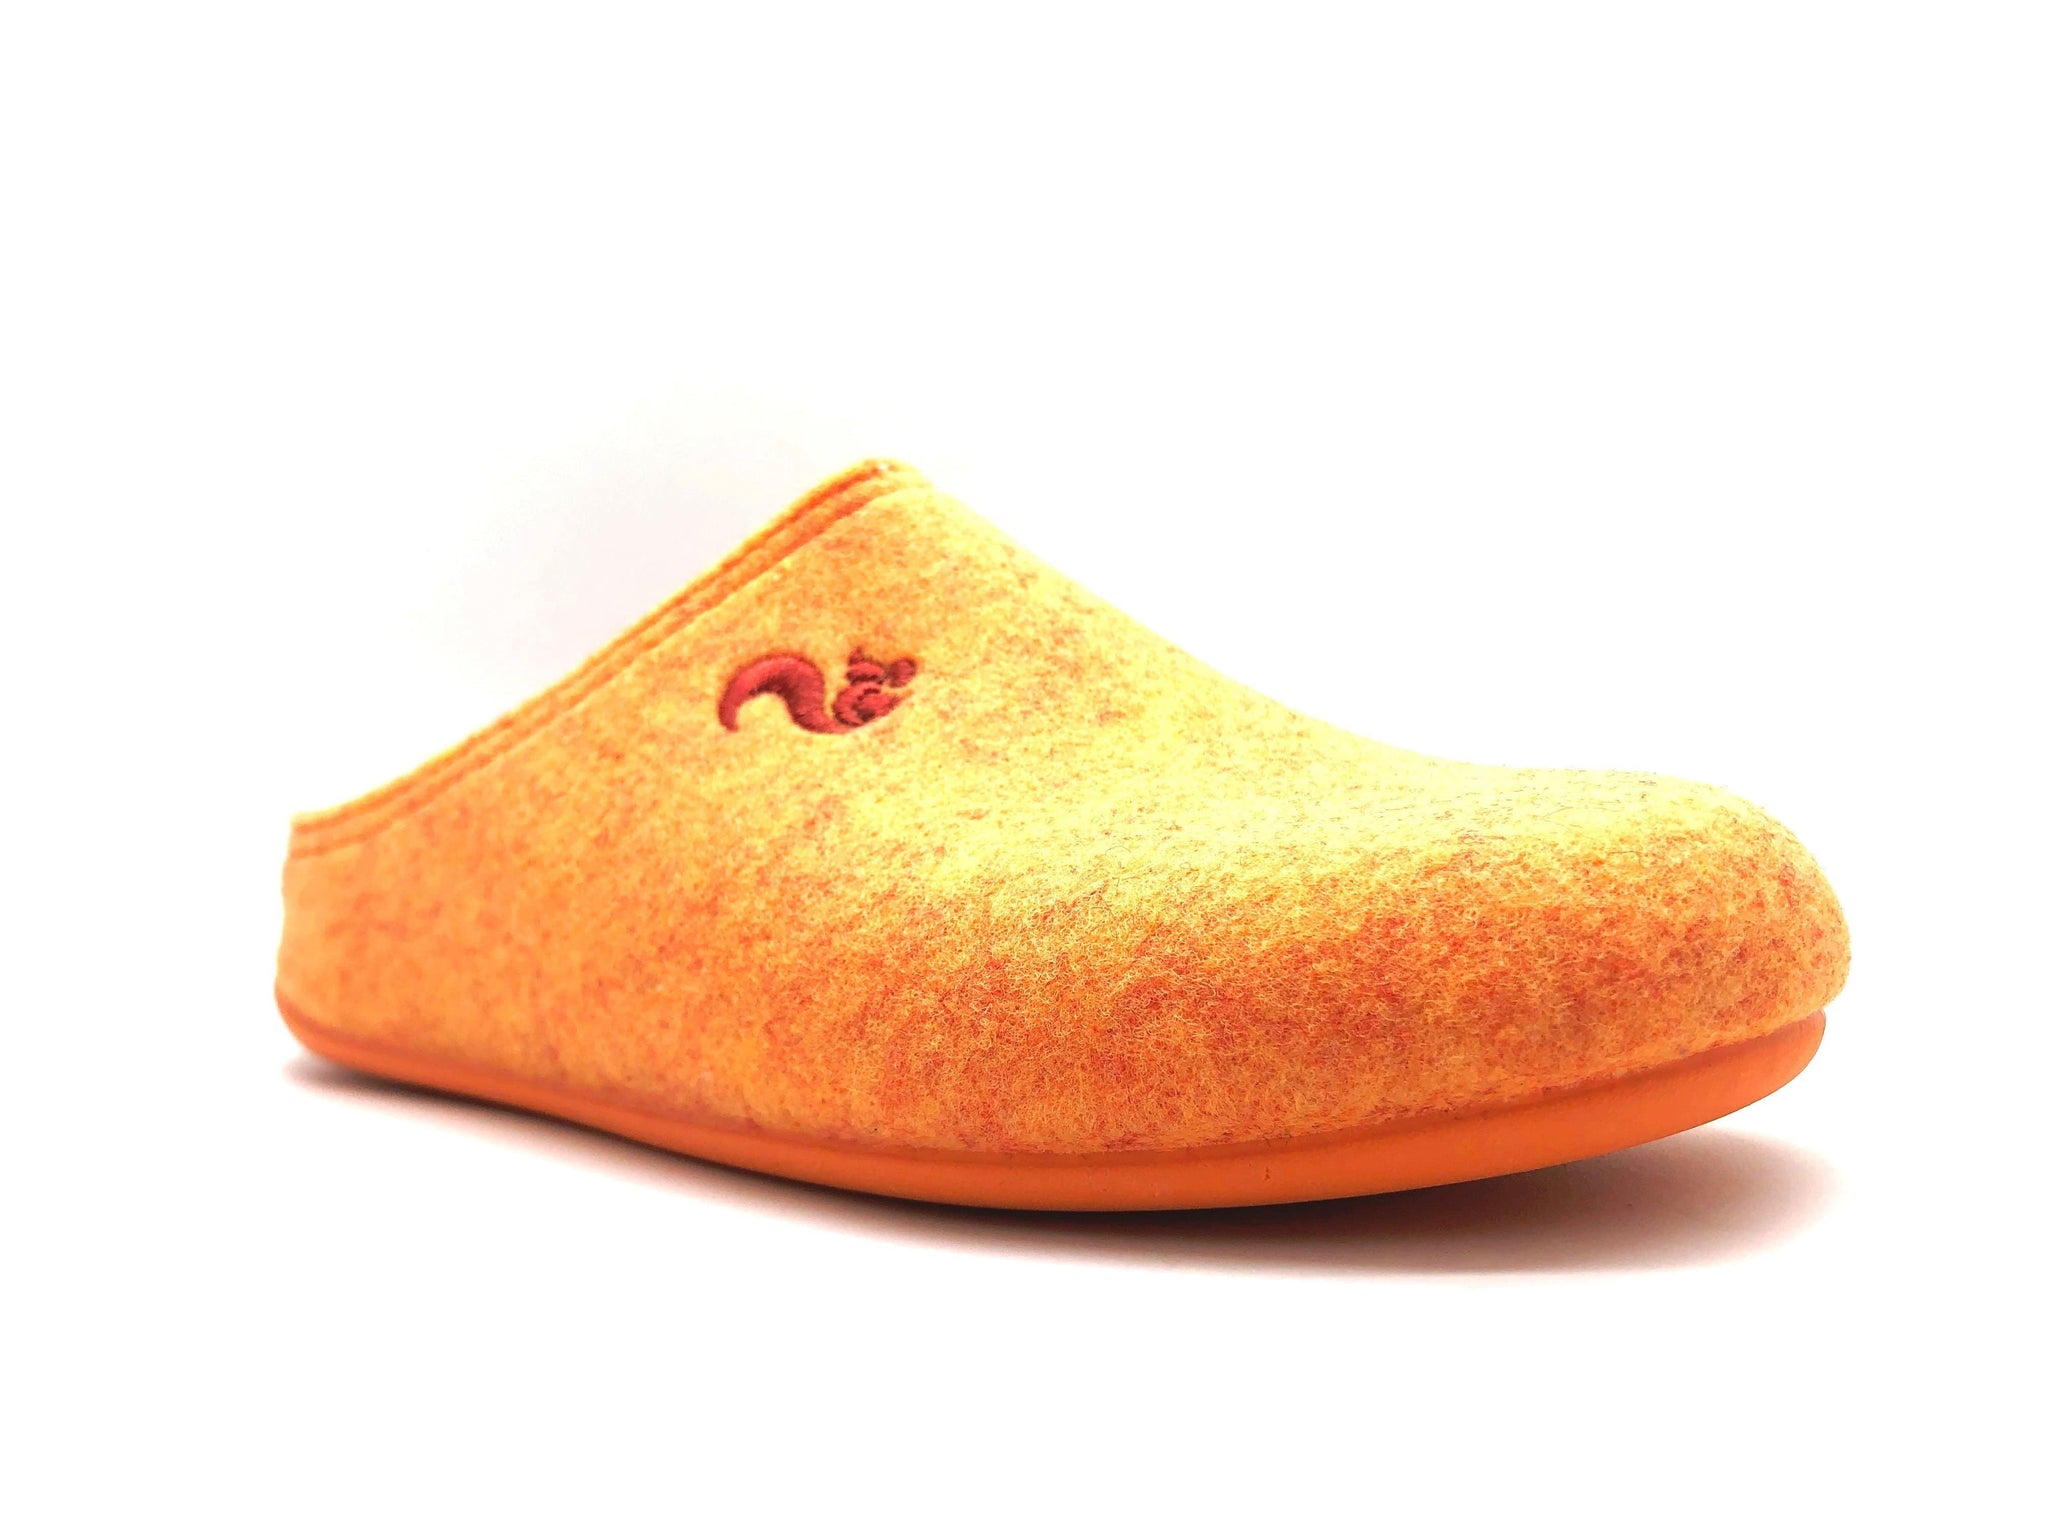 NAT 2 calçat thies 1856 ® Sabatilles PET reciclades taronja vegana (P / M) moda sostenible moda ètica